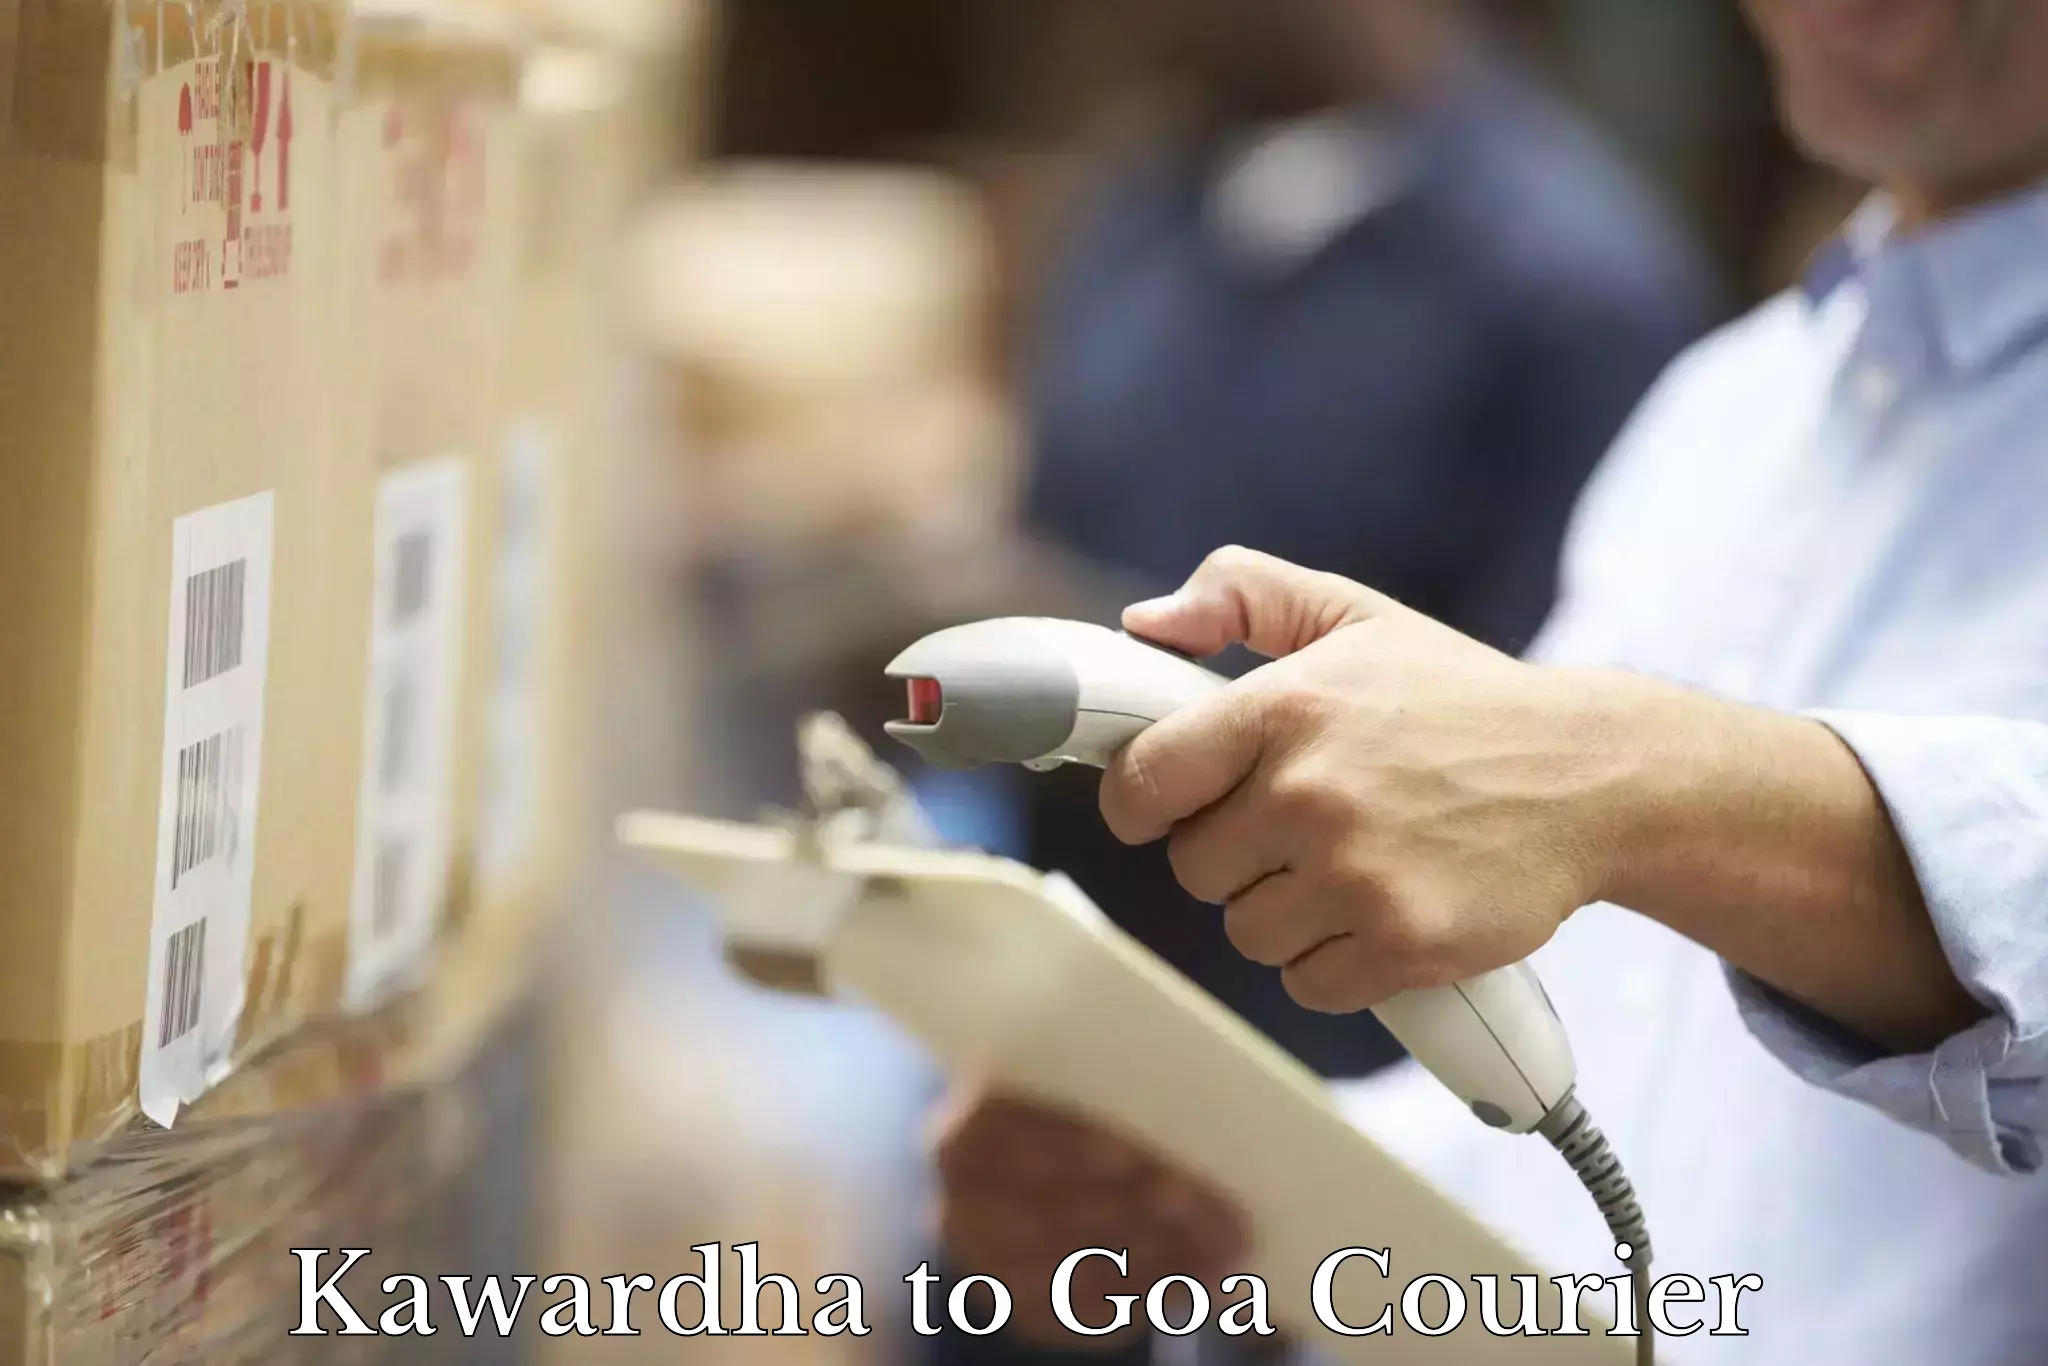 Comprehensive parcel tracking in Kawardha to Vasco da Gama